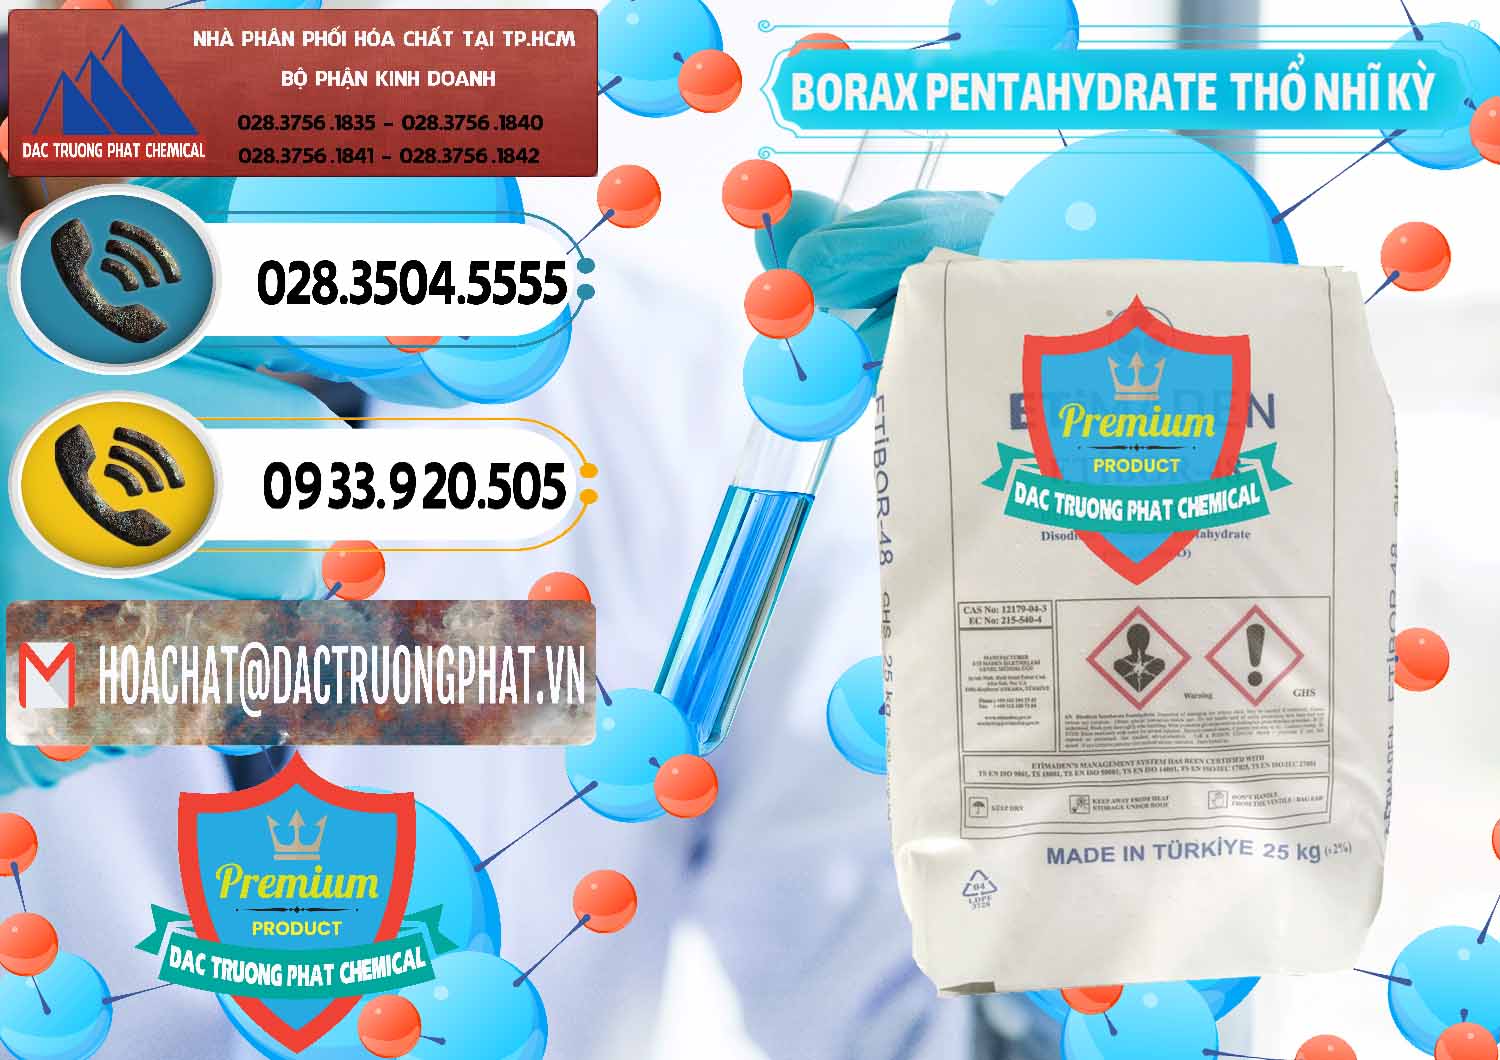 Nhà cung ứng ( bán ) Borax Pentahydrate Thổ Nhĩ Kỳ Turkey - 0431 - Nơi chuyên cung ứng và phân phối hóa chất tại TP.HCM - hoachatdetnhuom.vn